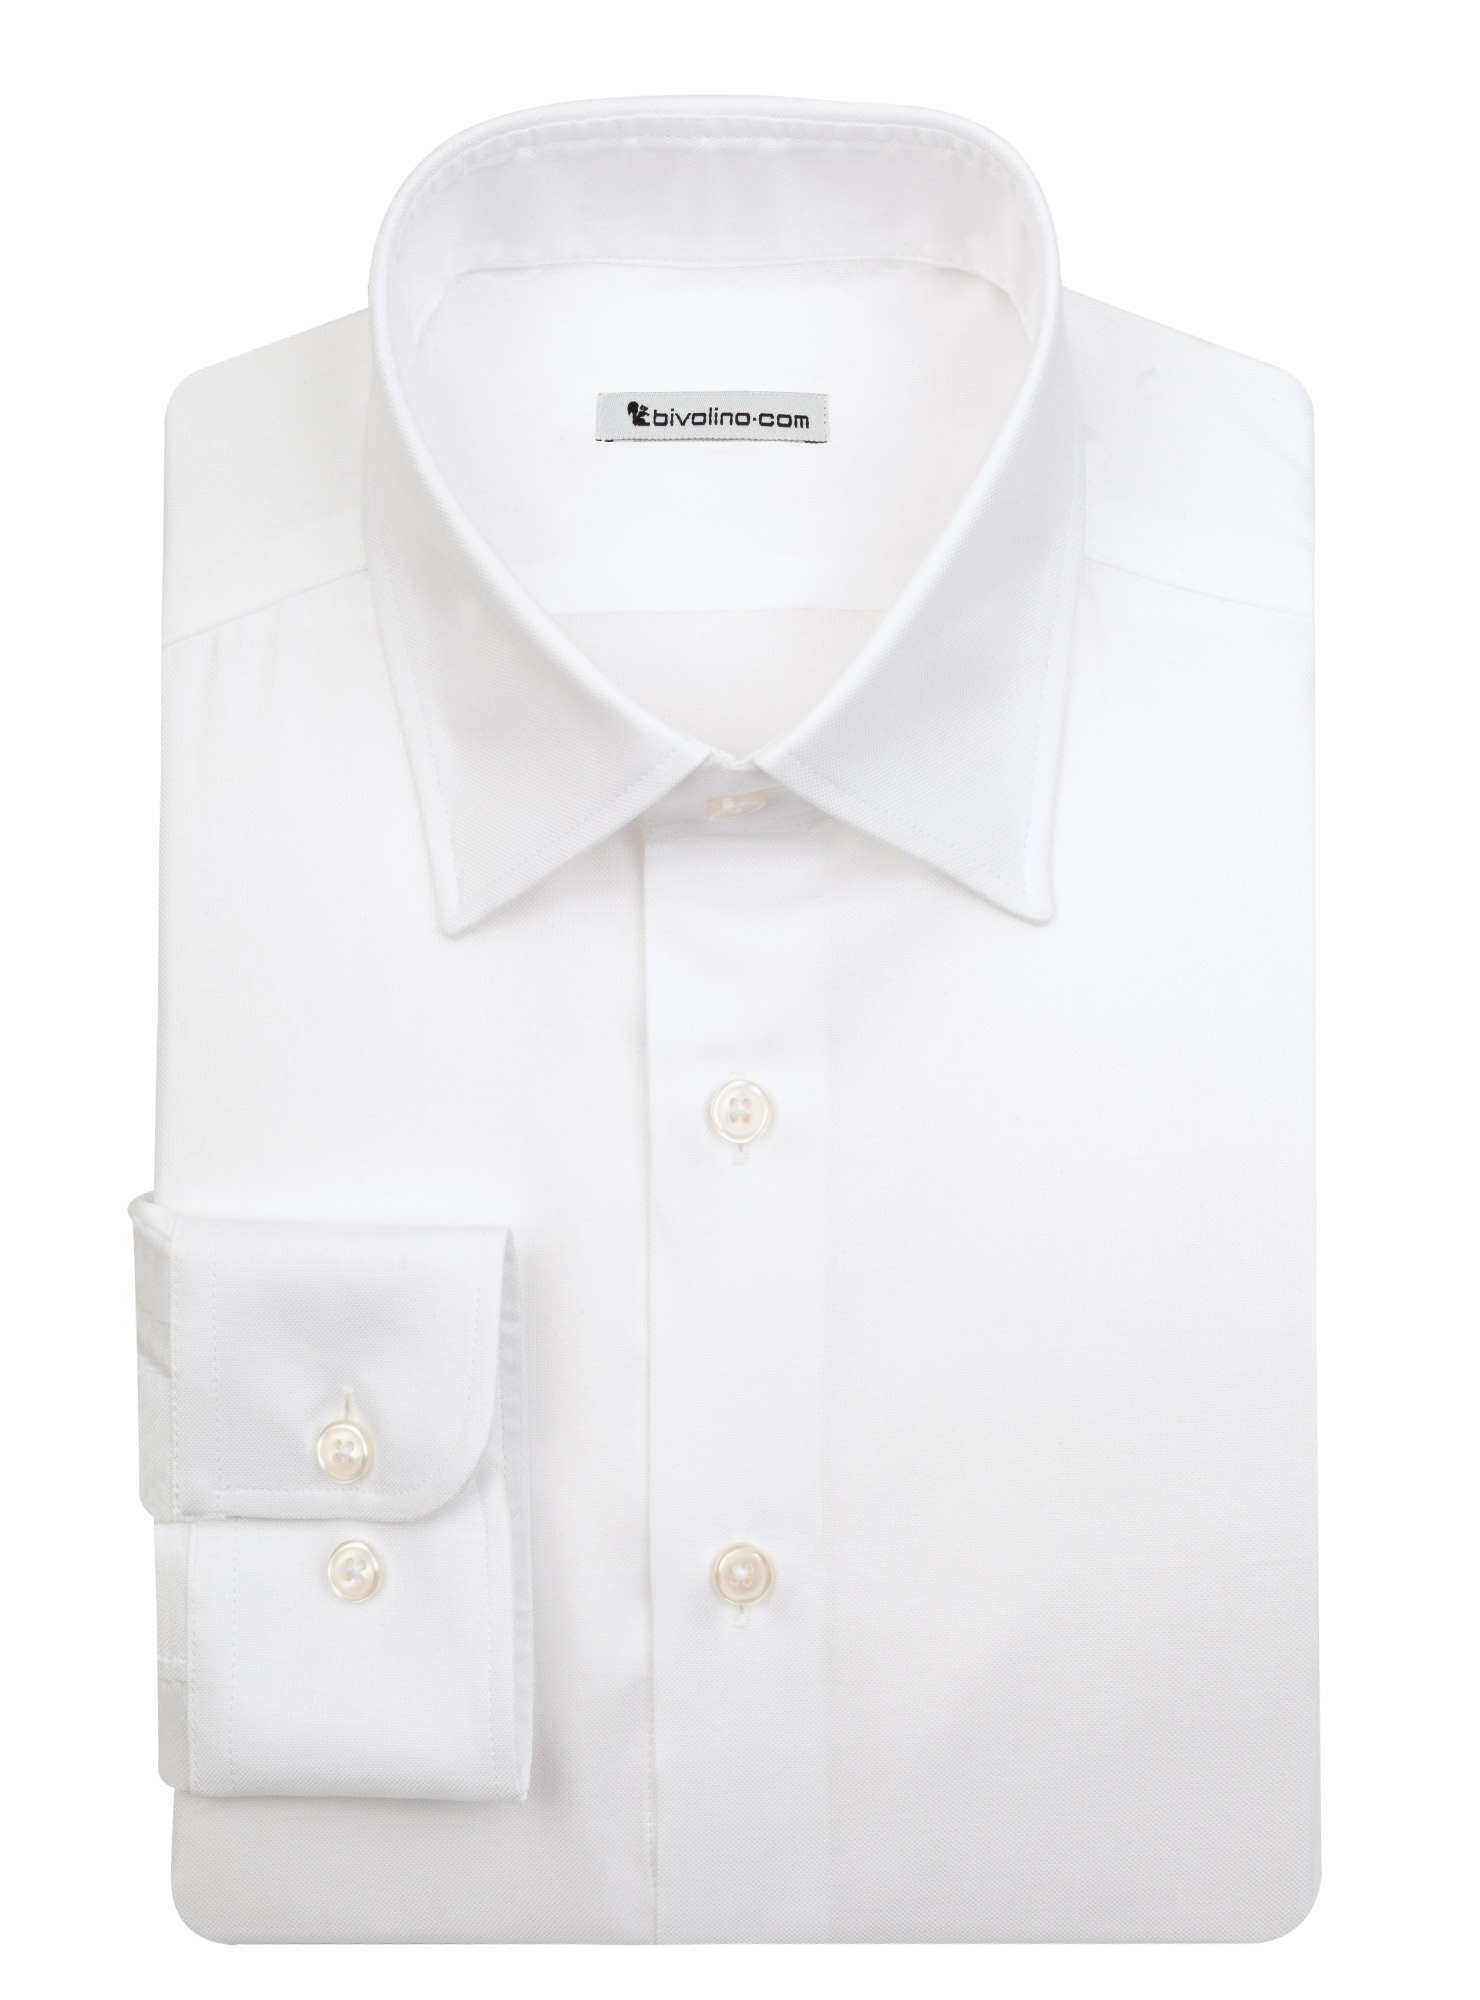 TREVISO - Oxford di cotone bianco royal camicia da uomo - LABA 2 